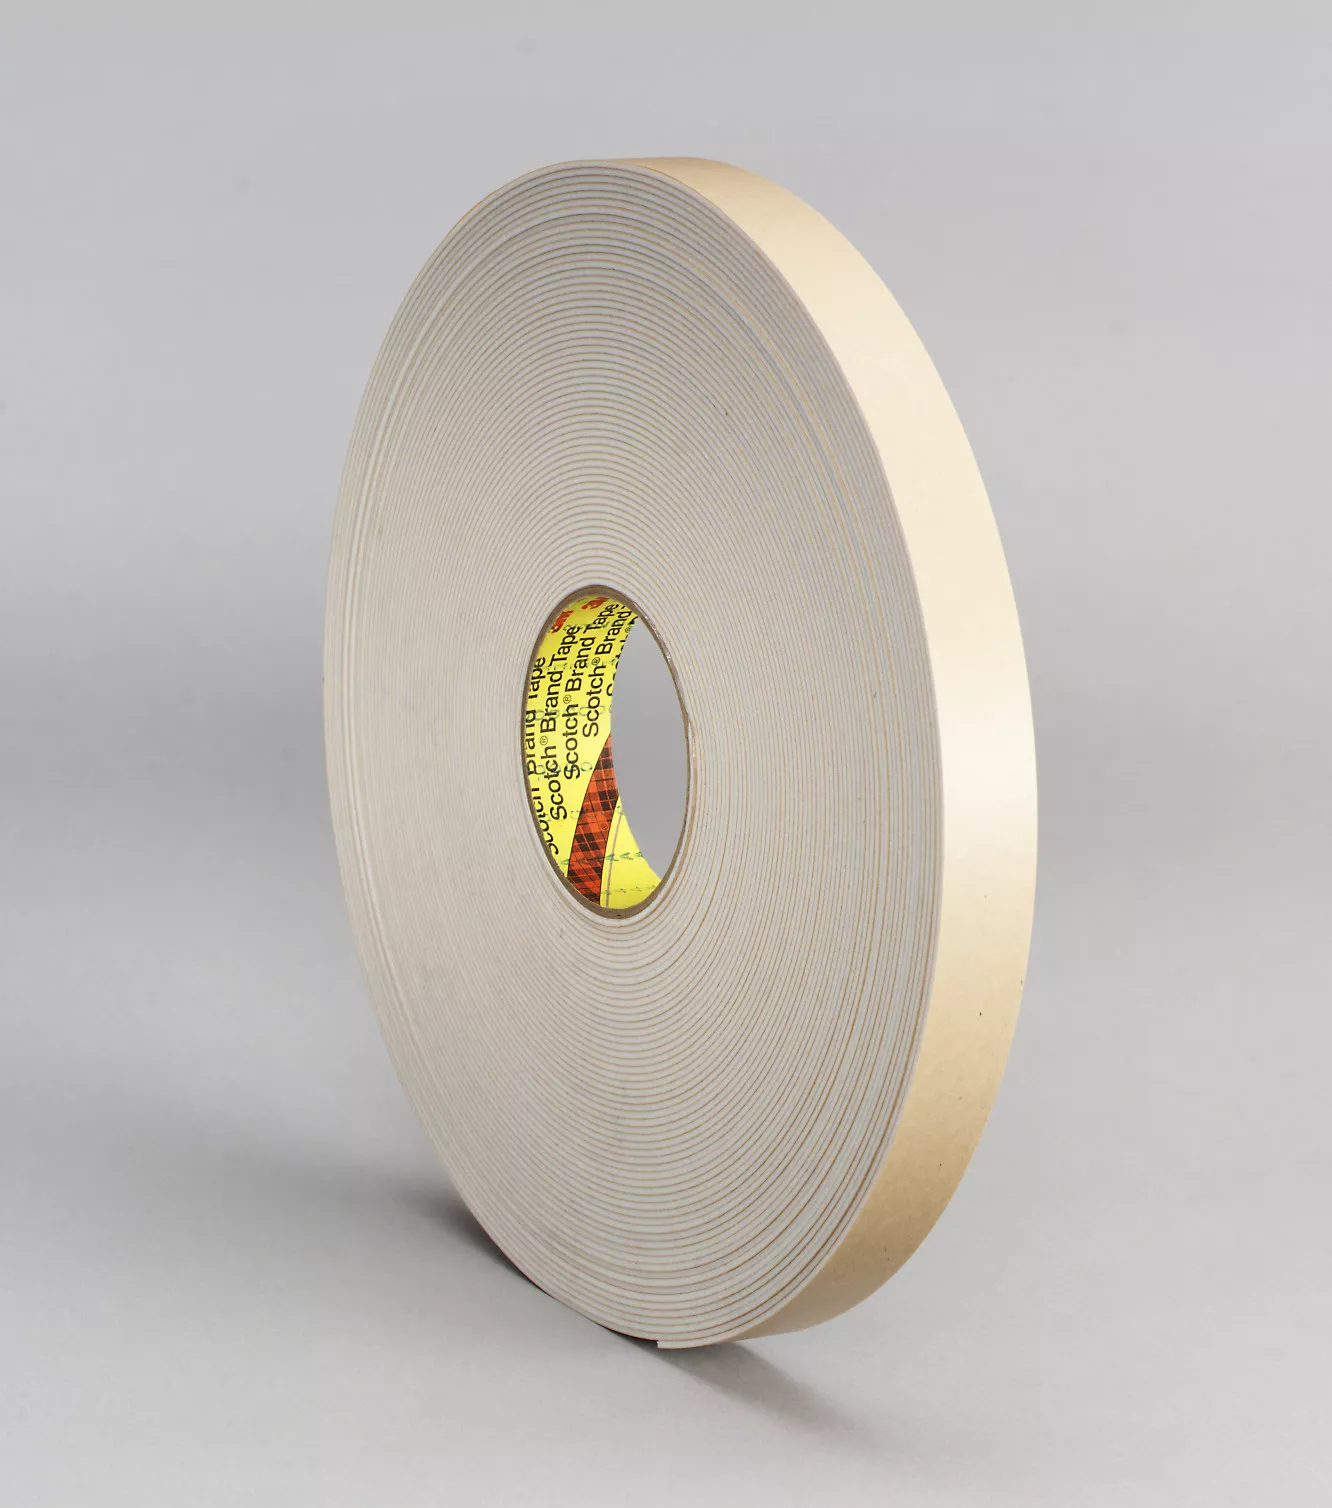 3M™ Double Coated Polyethylene Foam Tape 4496W, White, 1/2 in x 36 yd,
62 mil, 18 Roll/Case